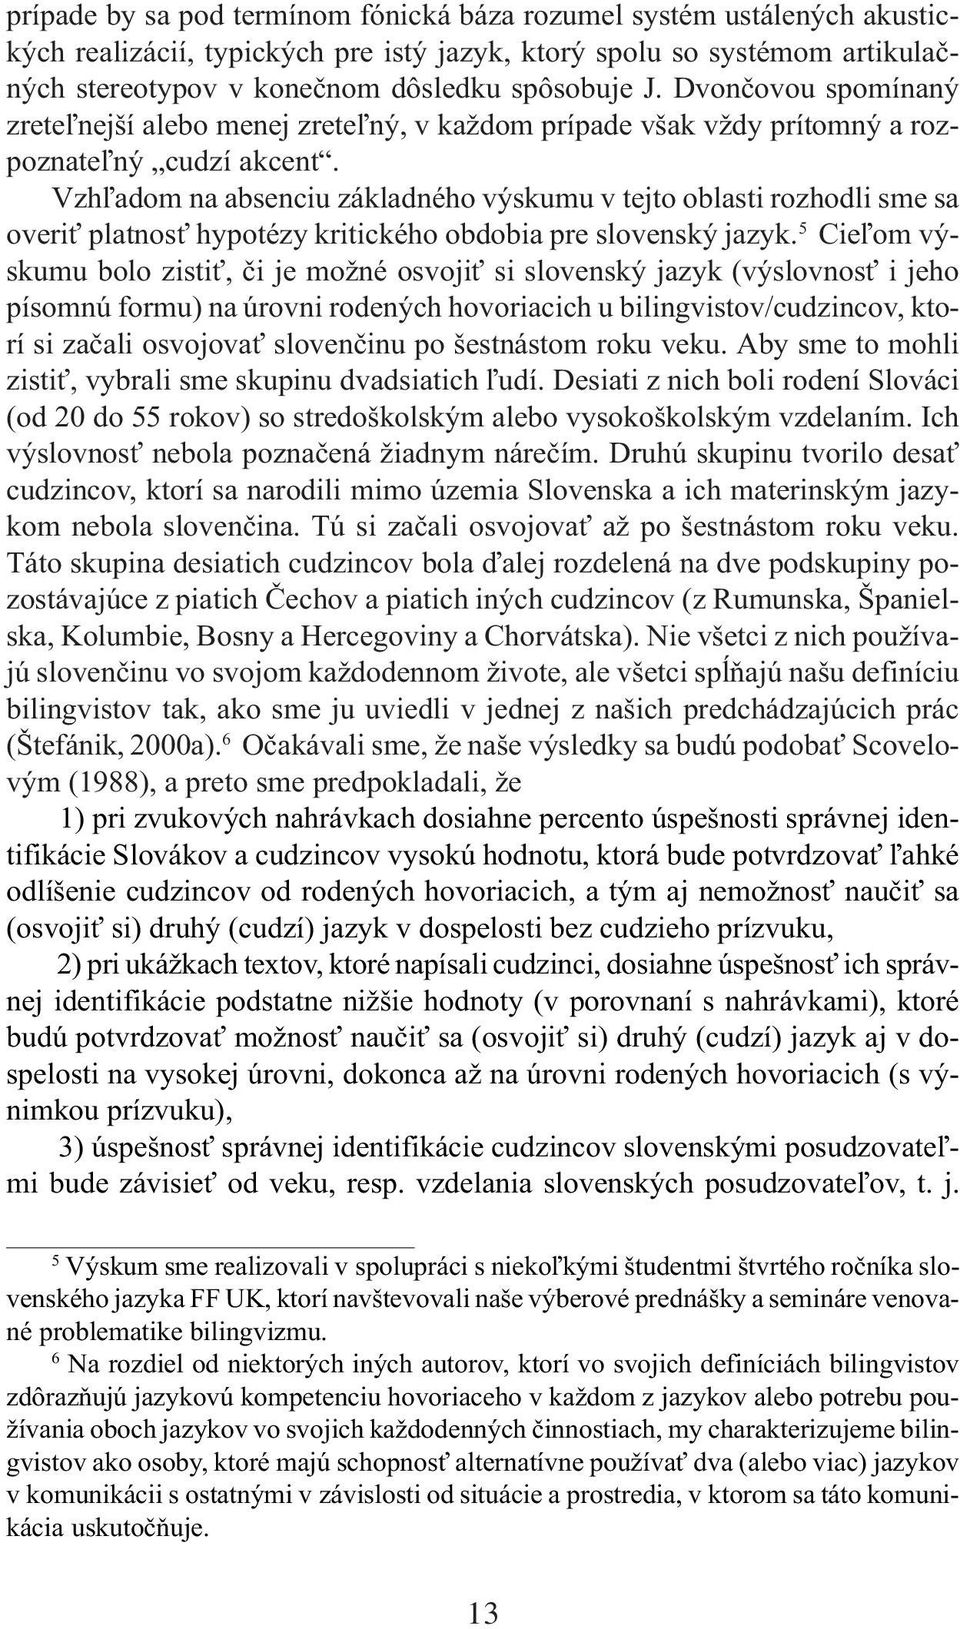 Vzh¾adom na absenciu základného výskumu v tejto oblasti rozhodli sme sa overi platnos hypotézy kritického obdobia pre slovenský jazyk.